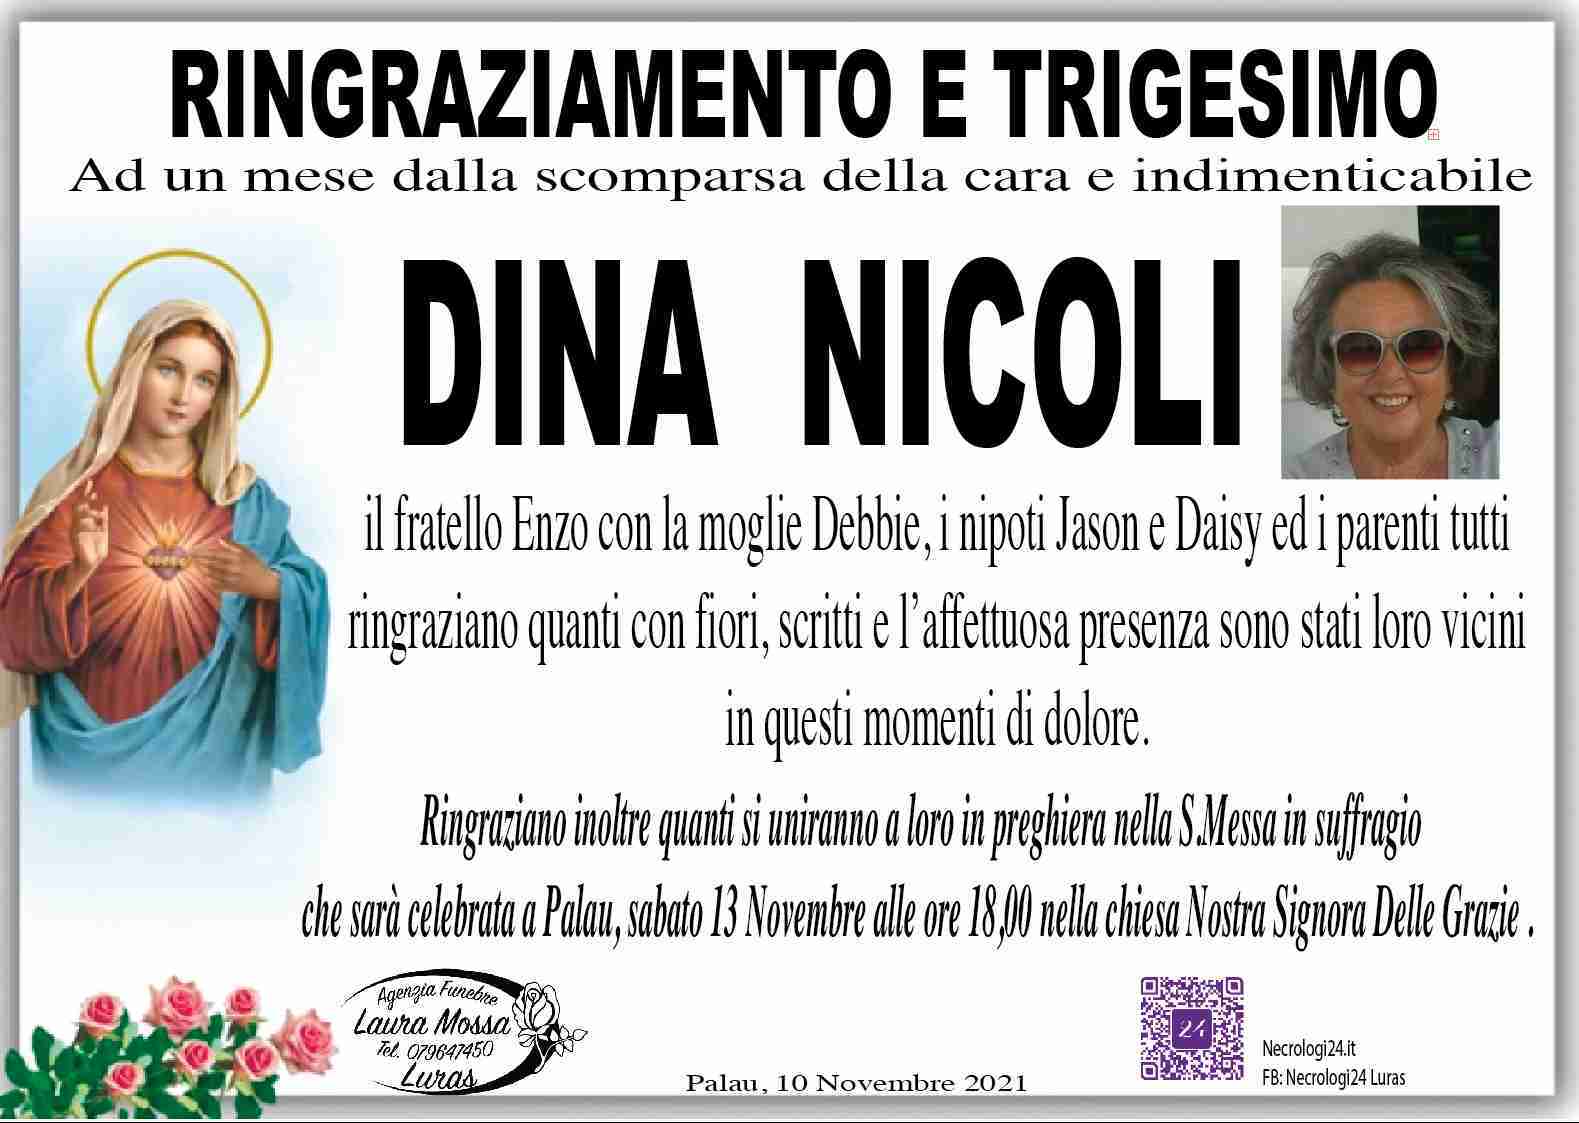 Dina Nicoli